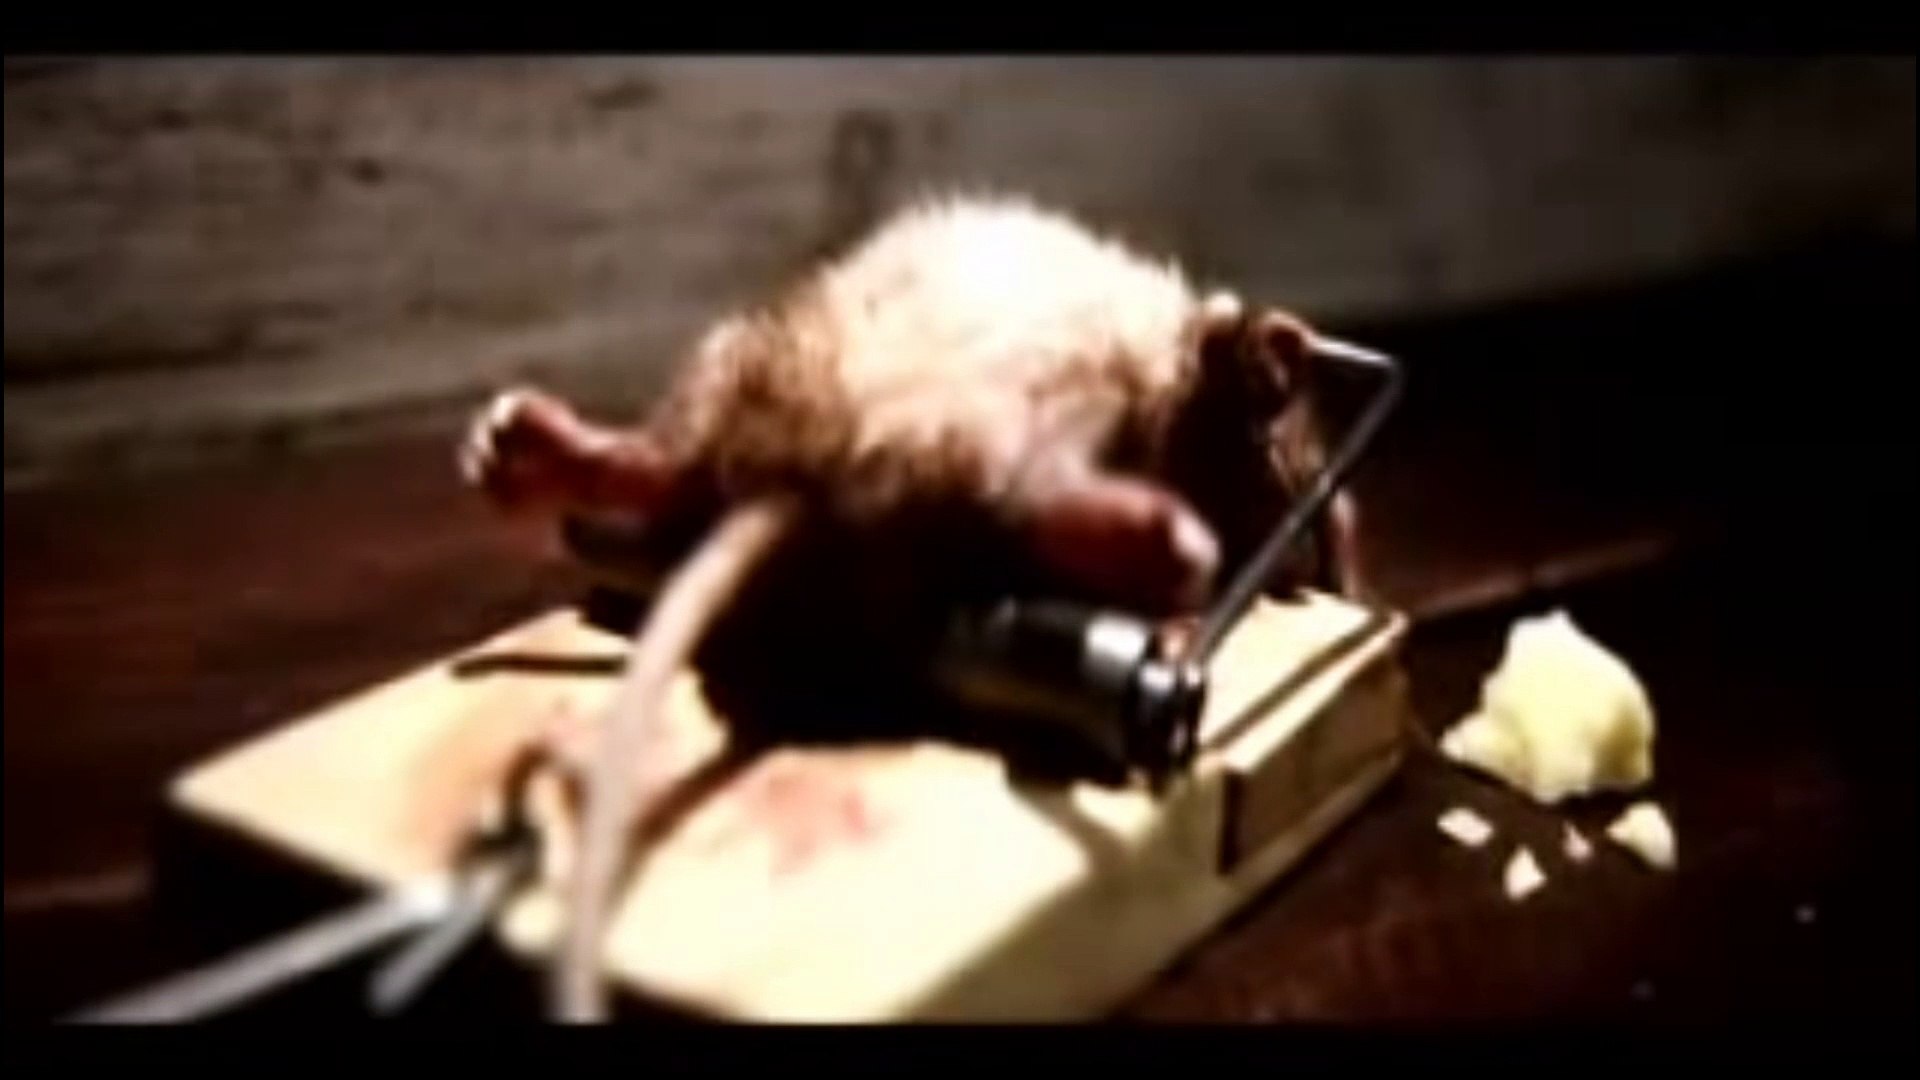 Vidéos pour Piège à souris, Piège à souris clips vidéo HD / 4K, footage